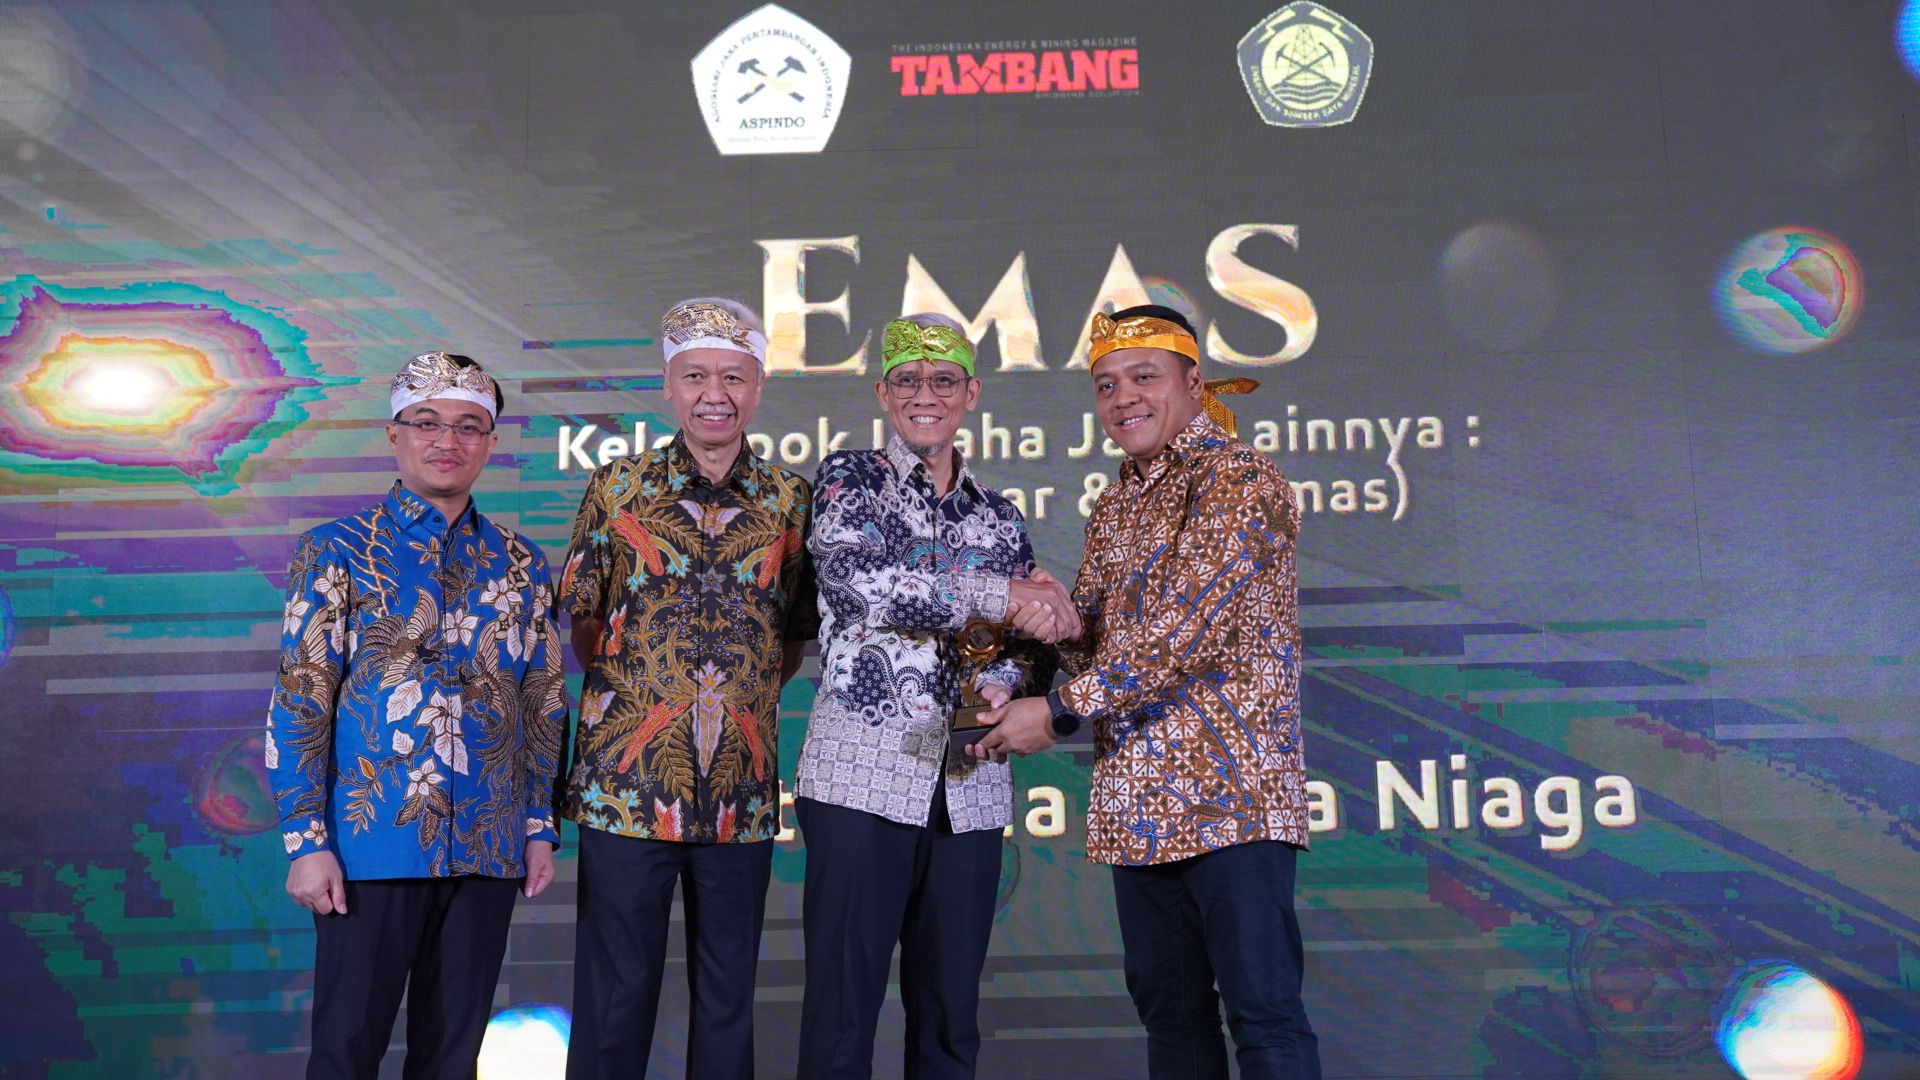  Pertamina Patra Niaga, Subholding Commercial & Trading PT Pertamina (Persero) menerima penghargaan Emas untuk Kategori Support BBM dan Pelumas pada Temu Tahunan Asosiasi Jasa Pertambangan Indonesia (ASPINDO) 2023.